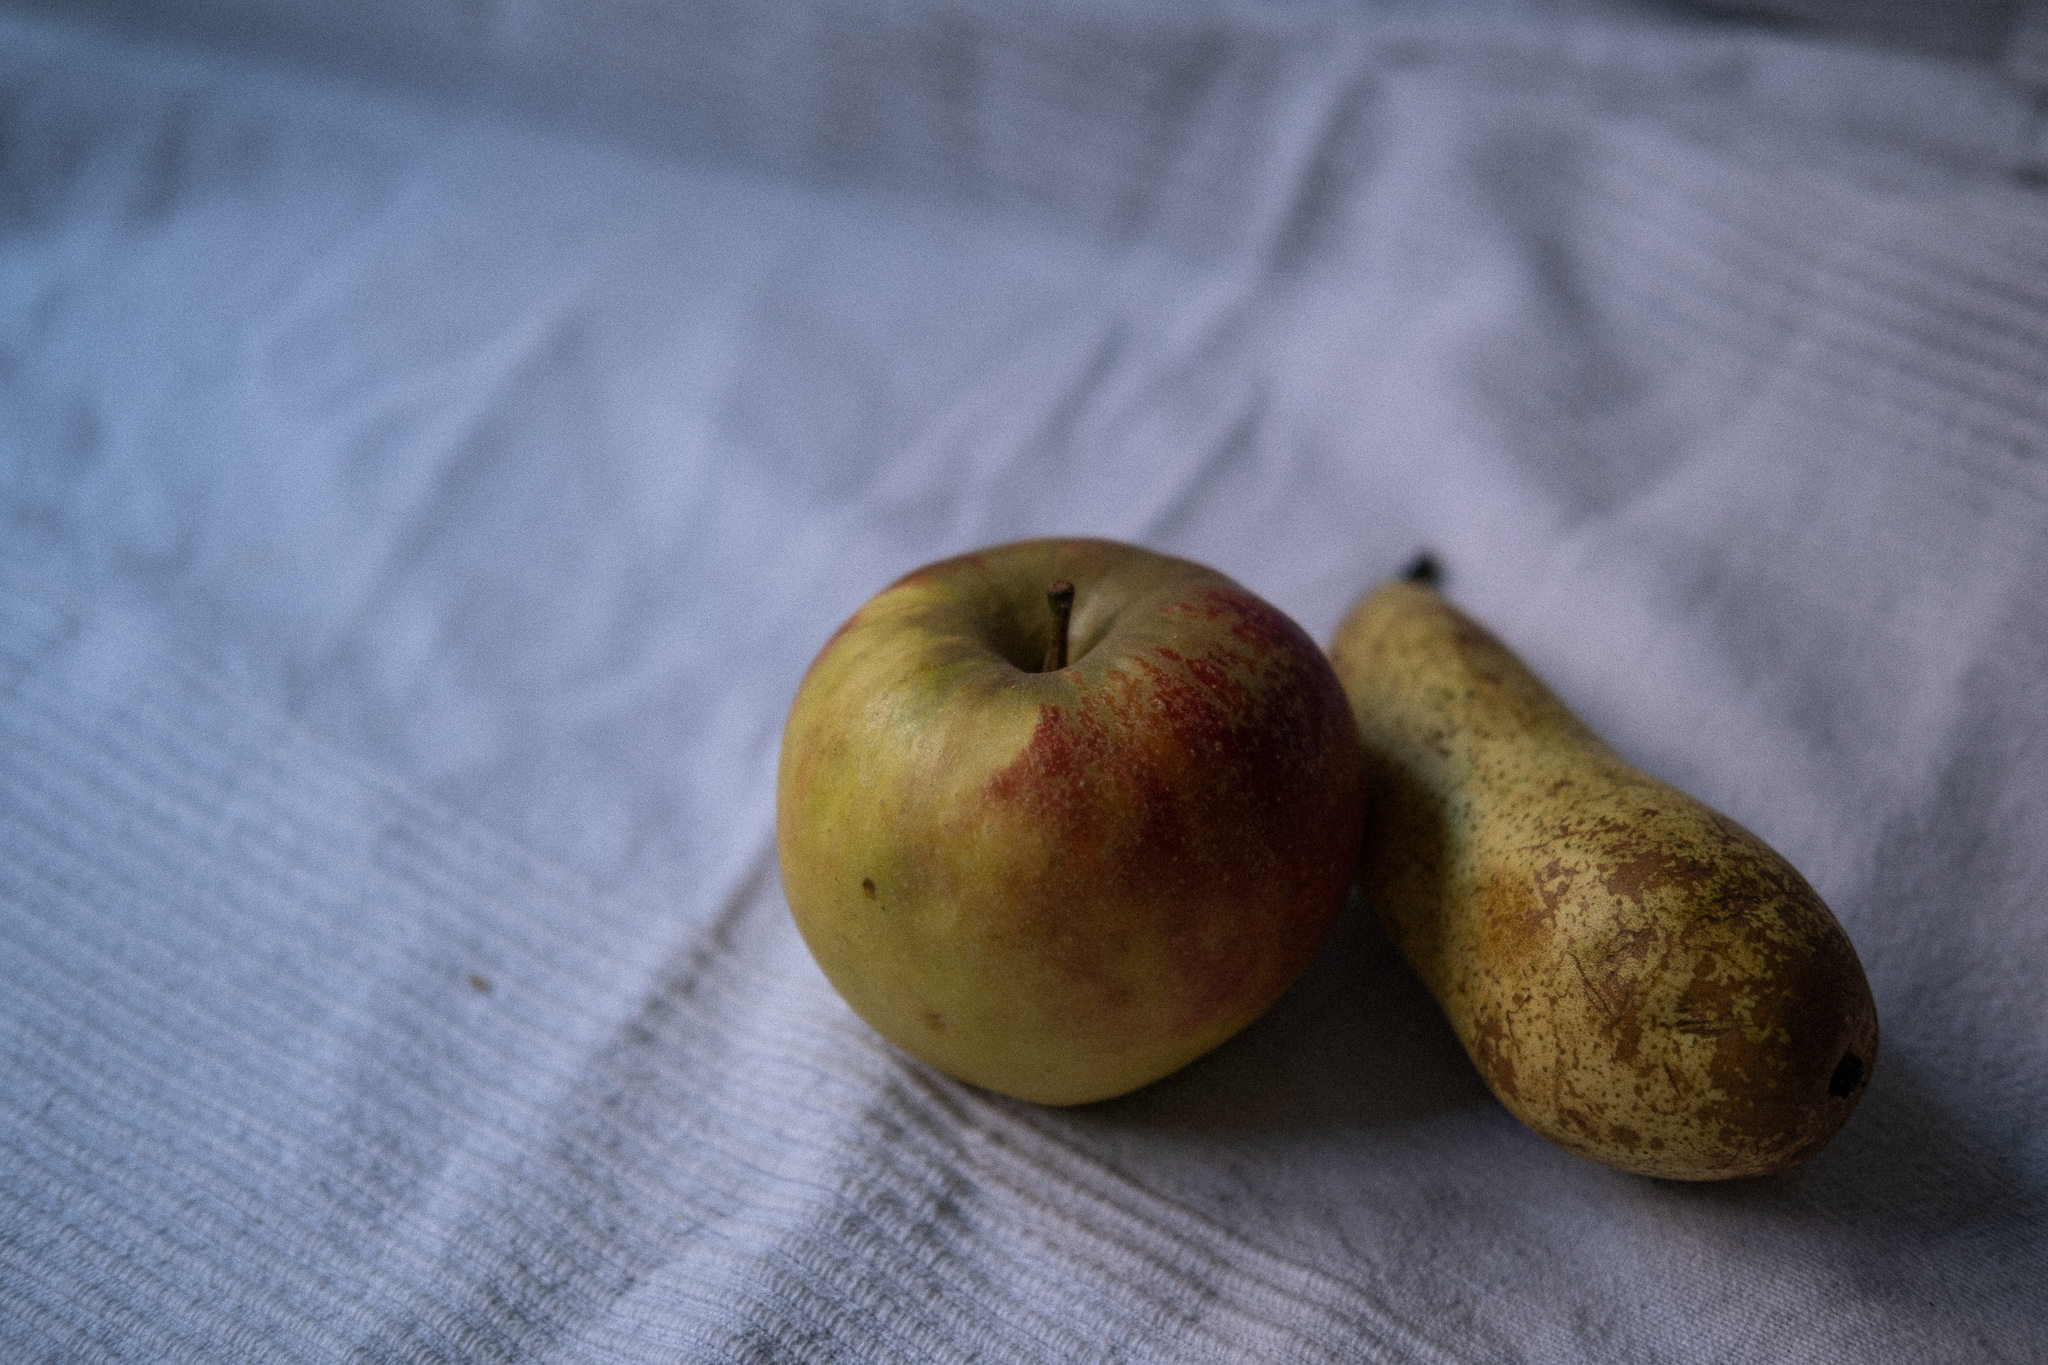 Ein rot gefleckter Apfel und eine lange schmale Birne liegen auf einem weißen Tuch und bilden ein Stillleben